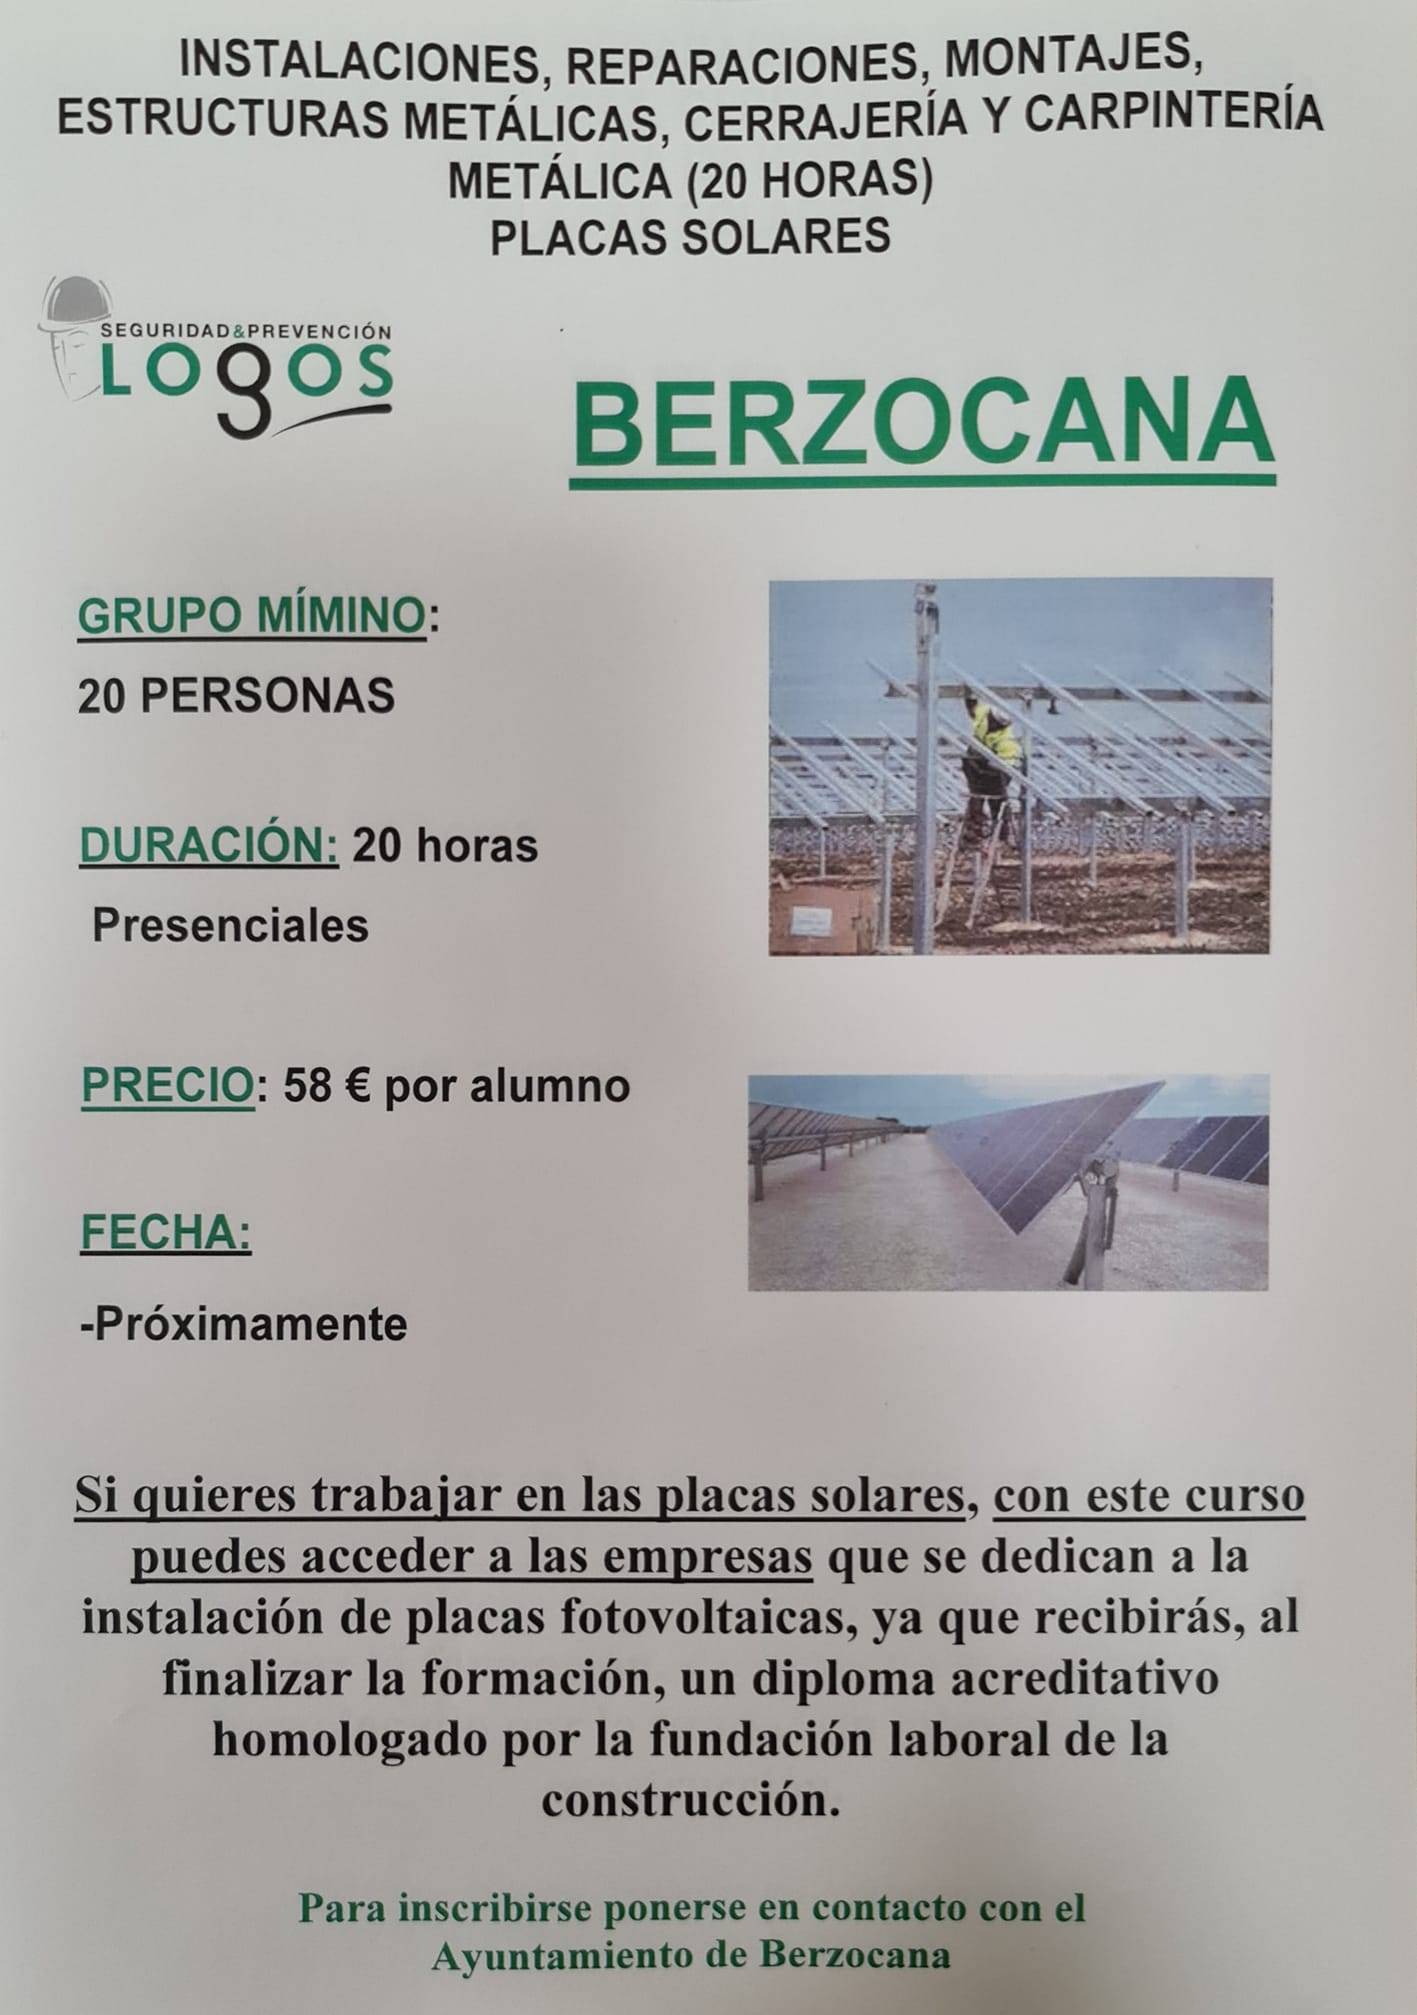 Curso de placas fotovoltaicas (2021) - Berzocana (Cáceres)